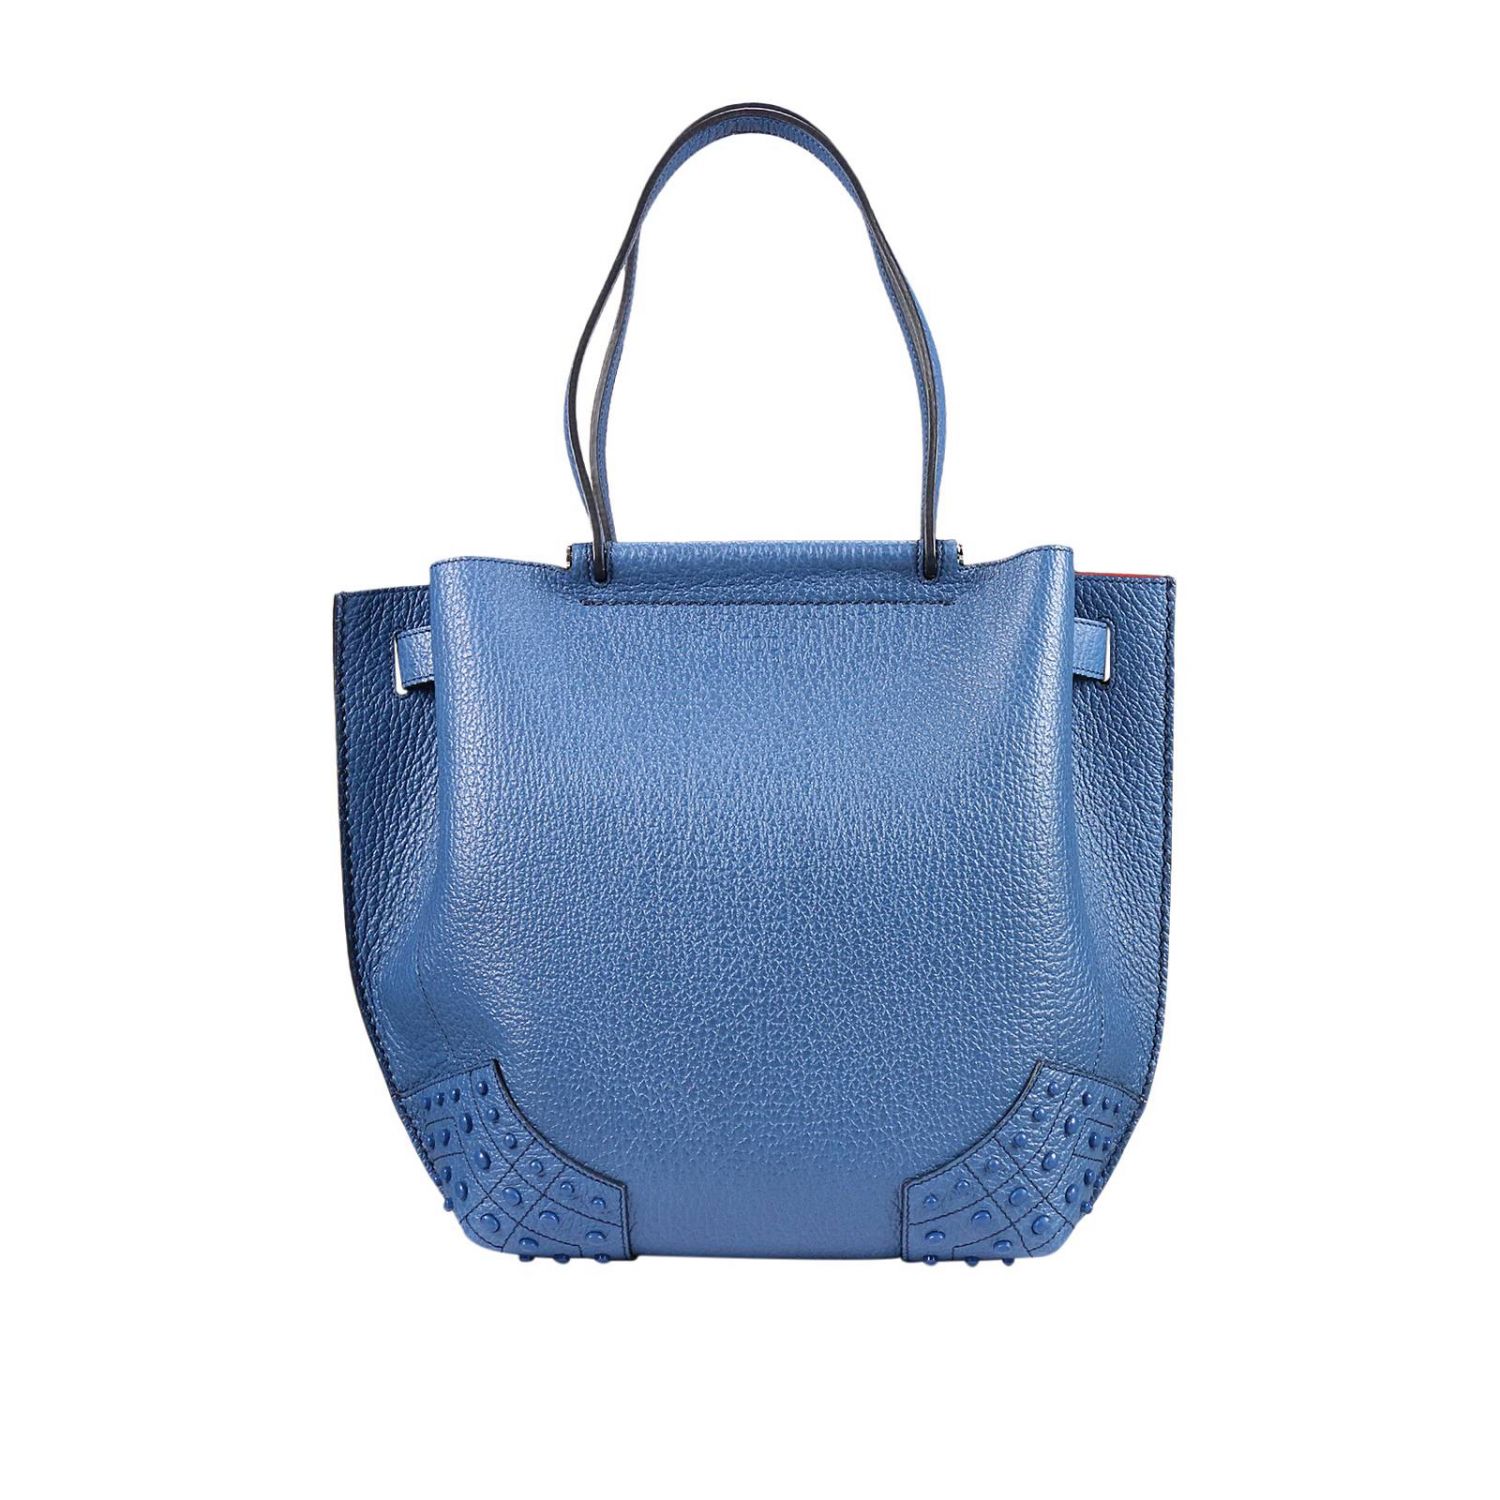 TODS: Handbag women Tod's | Shoulder Bag Tods Women Blue | Shoulder Bag ...